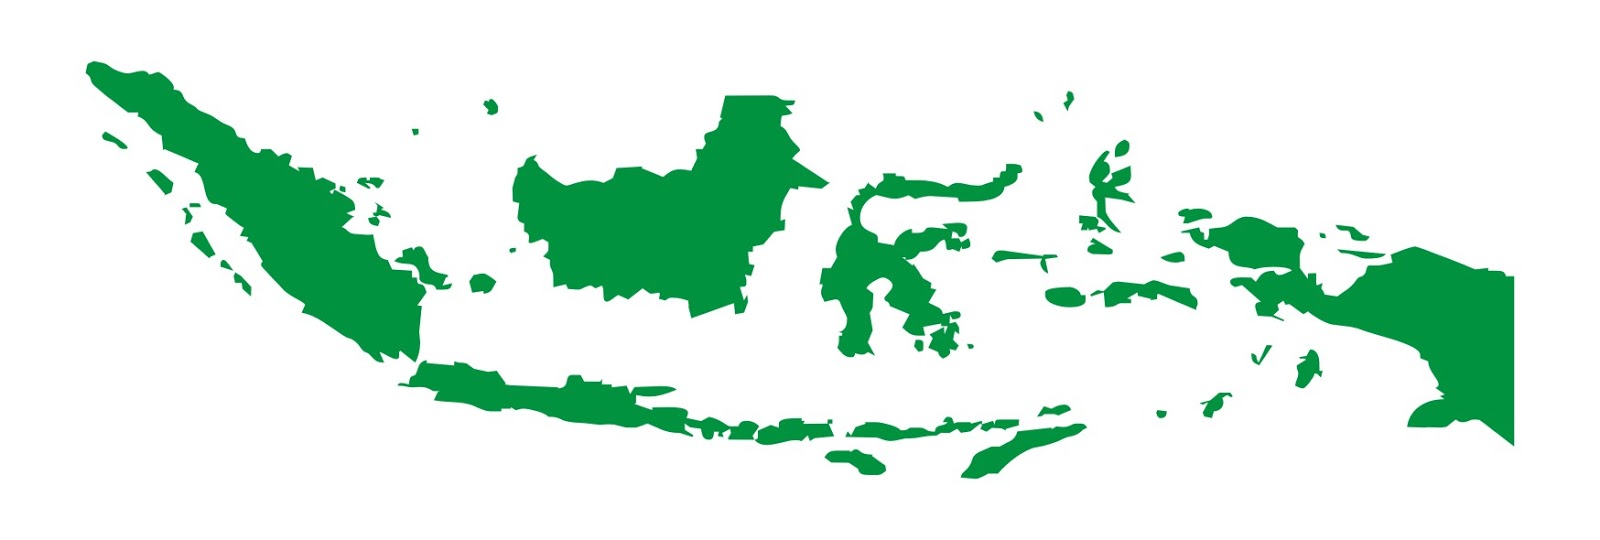  Gambar  Wallpaper Peta Indonesia Wallpapersafari Lengkap 